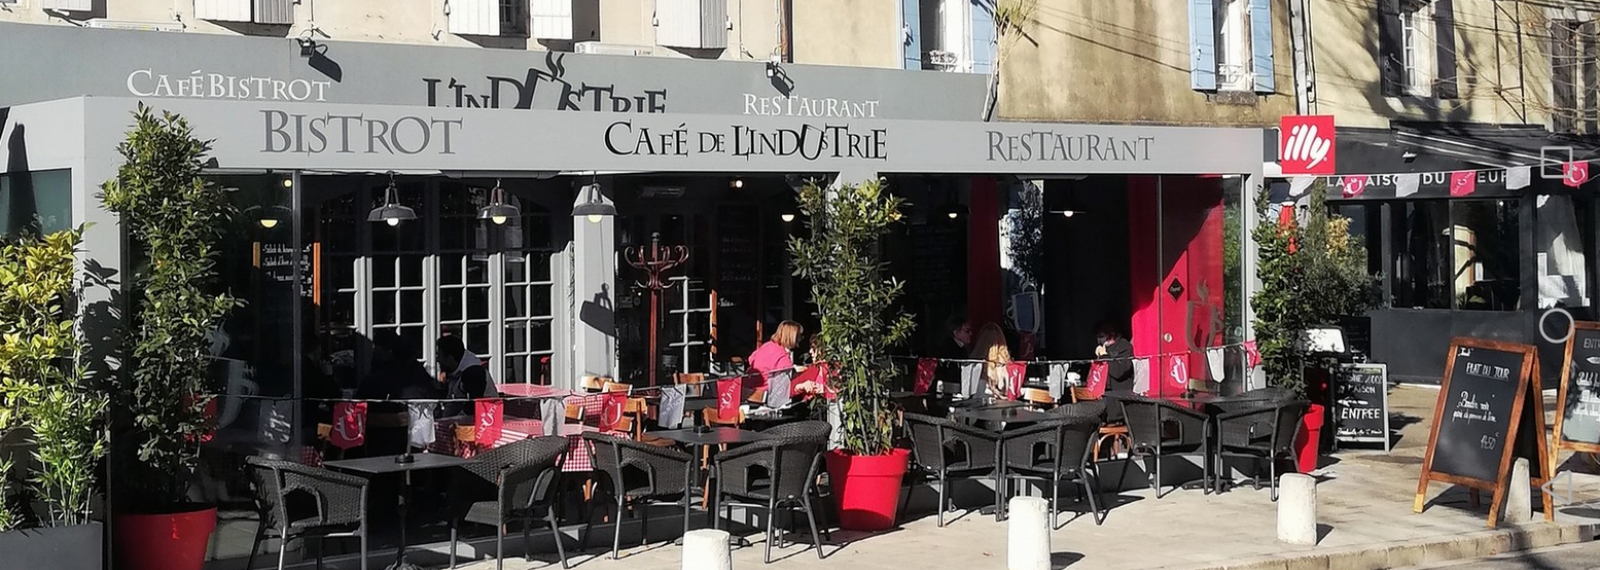 Restaurant Brasserie Le Café de l'Industrie à Saint-Rémy-de-Provence